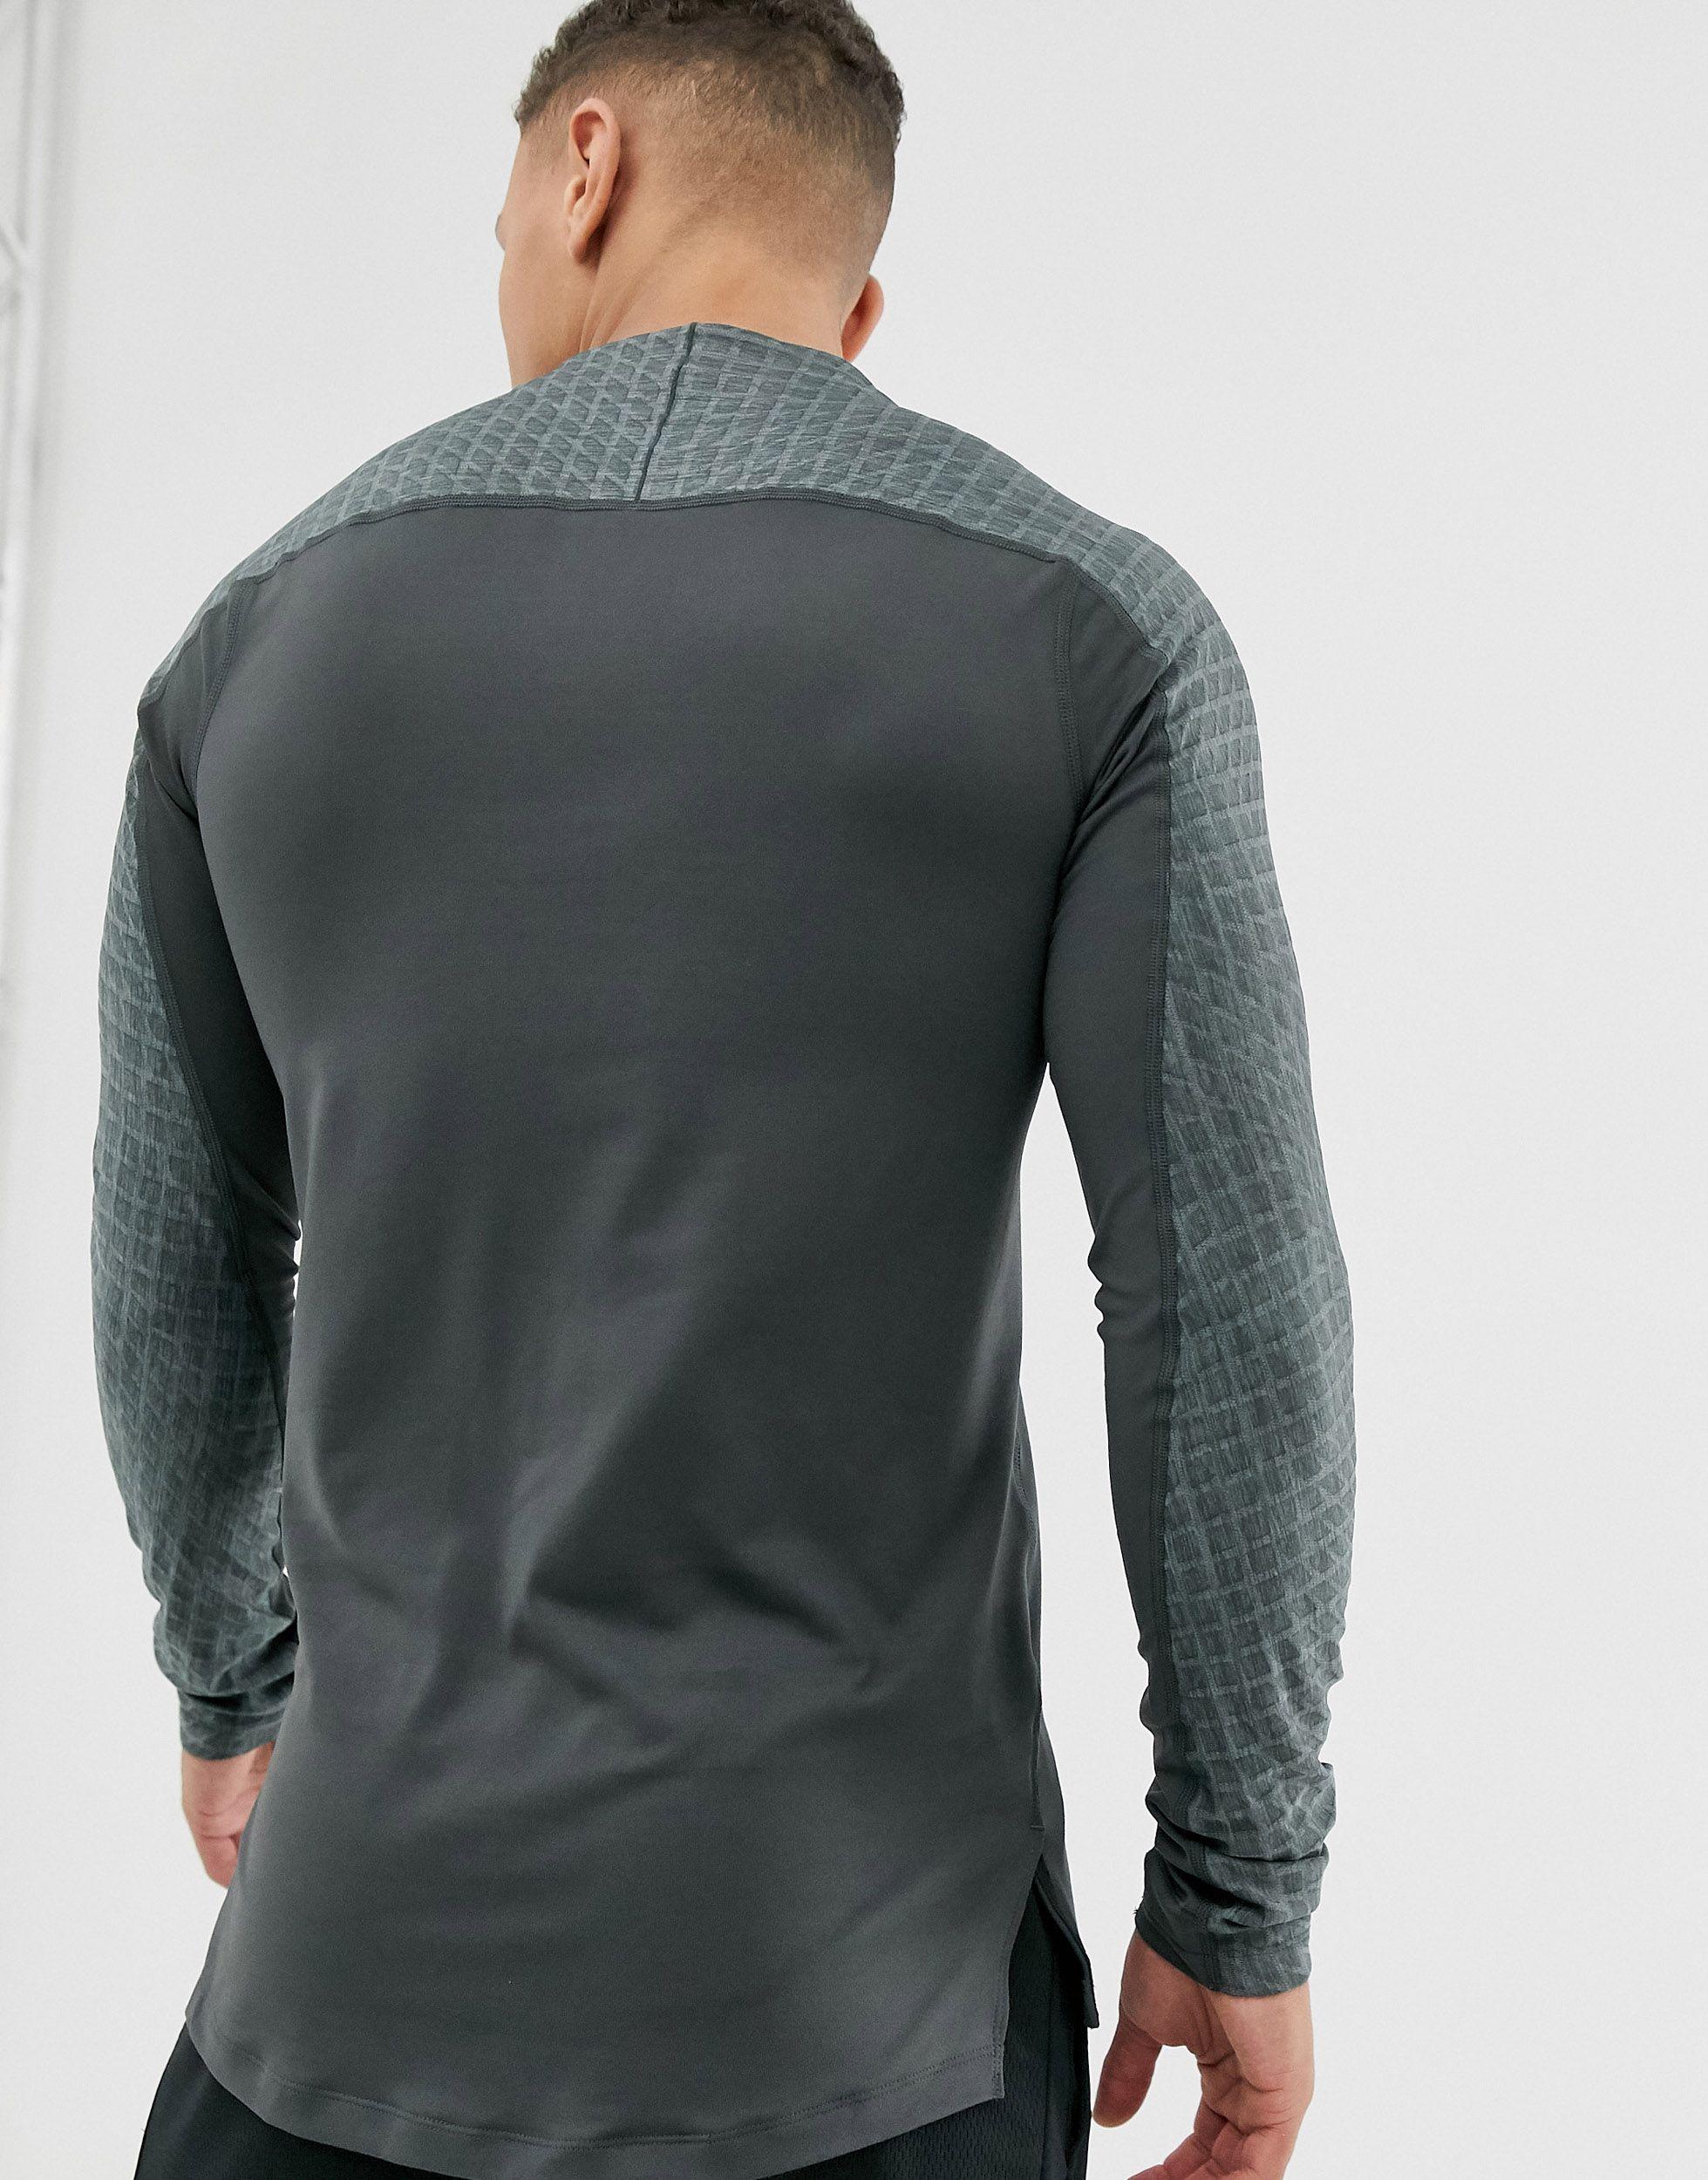 Nike, Pro Core Long Sleeve T Shirt Mens, Baselayer Tops